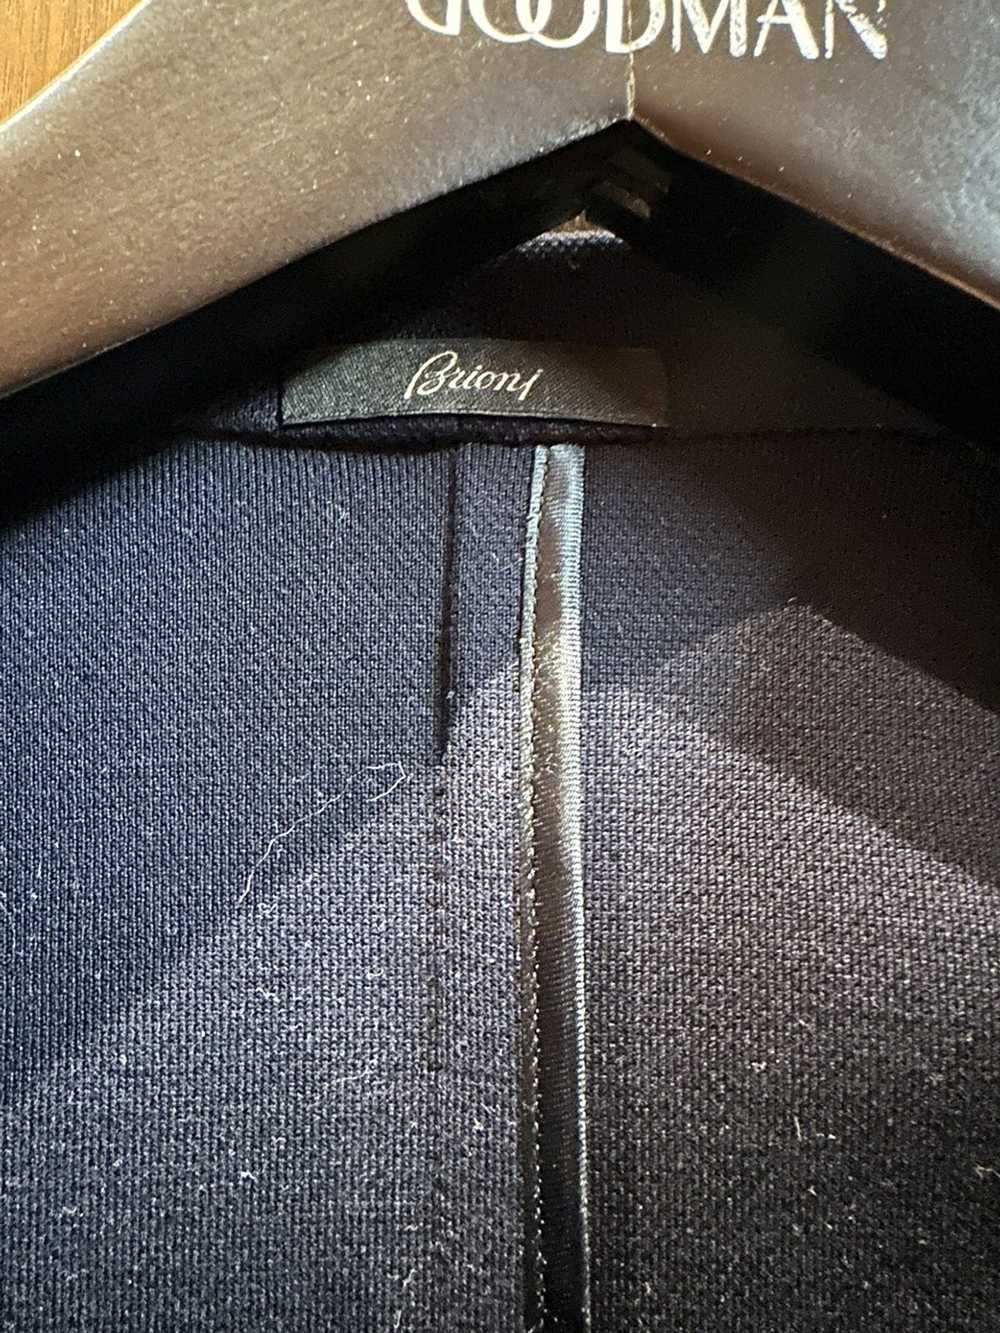 Brioni Brioni dark blue wool luxury tailored suit… - image 6